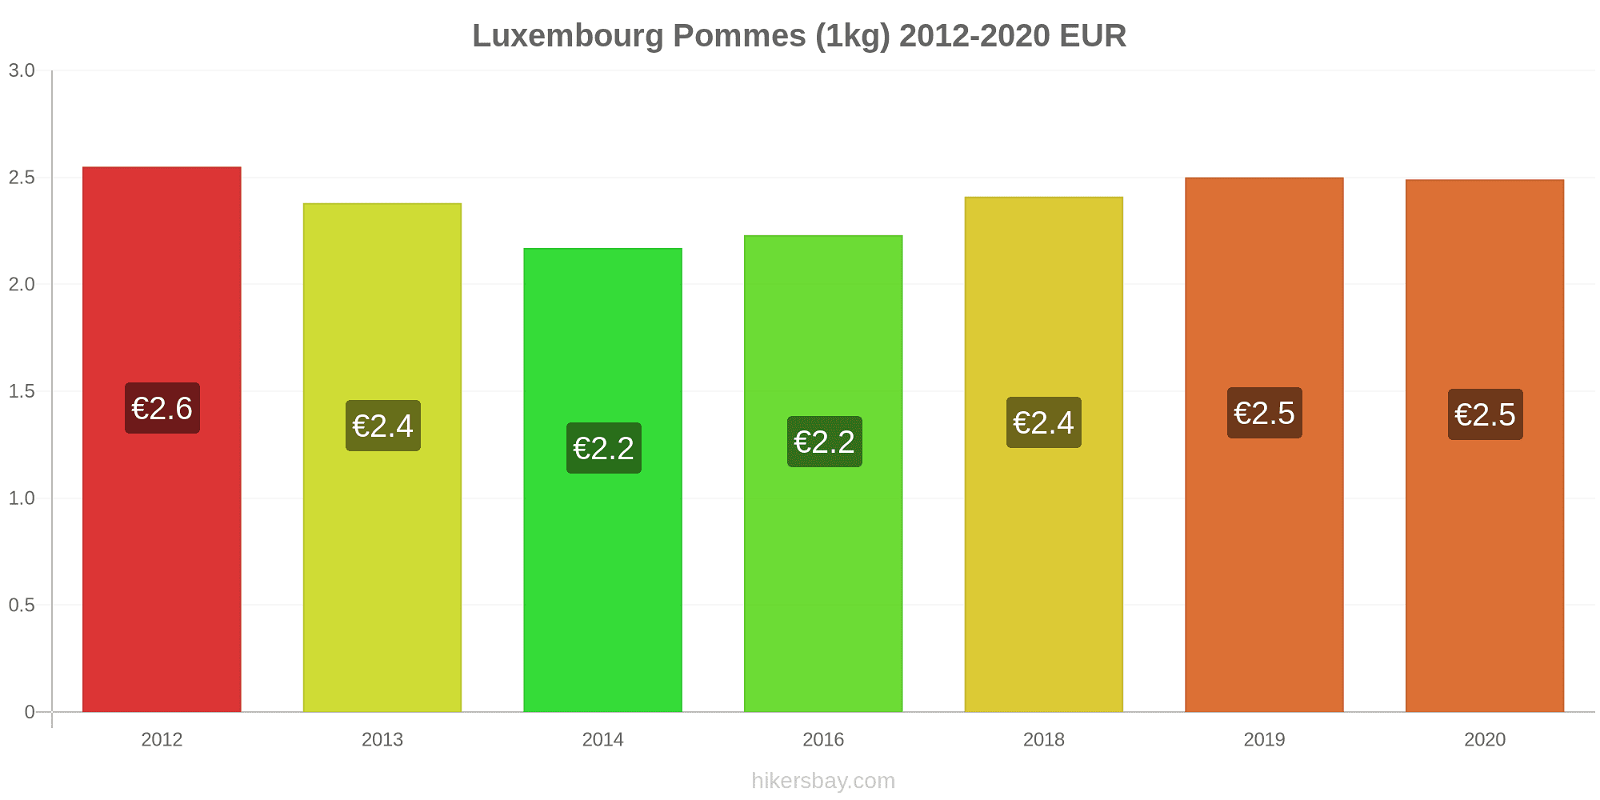 Luxembourg changements de prix Pommes (1kg) hikersbay.com